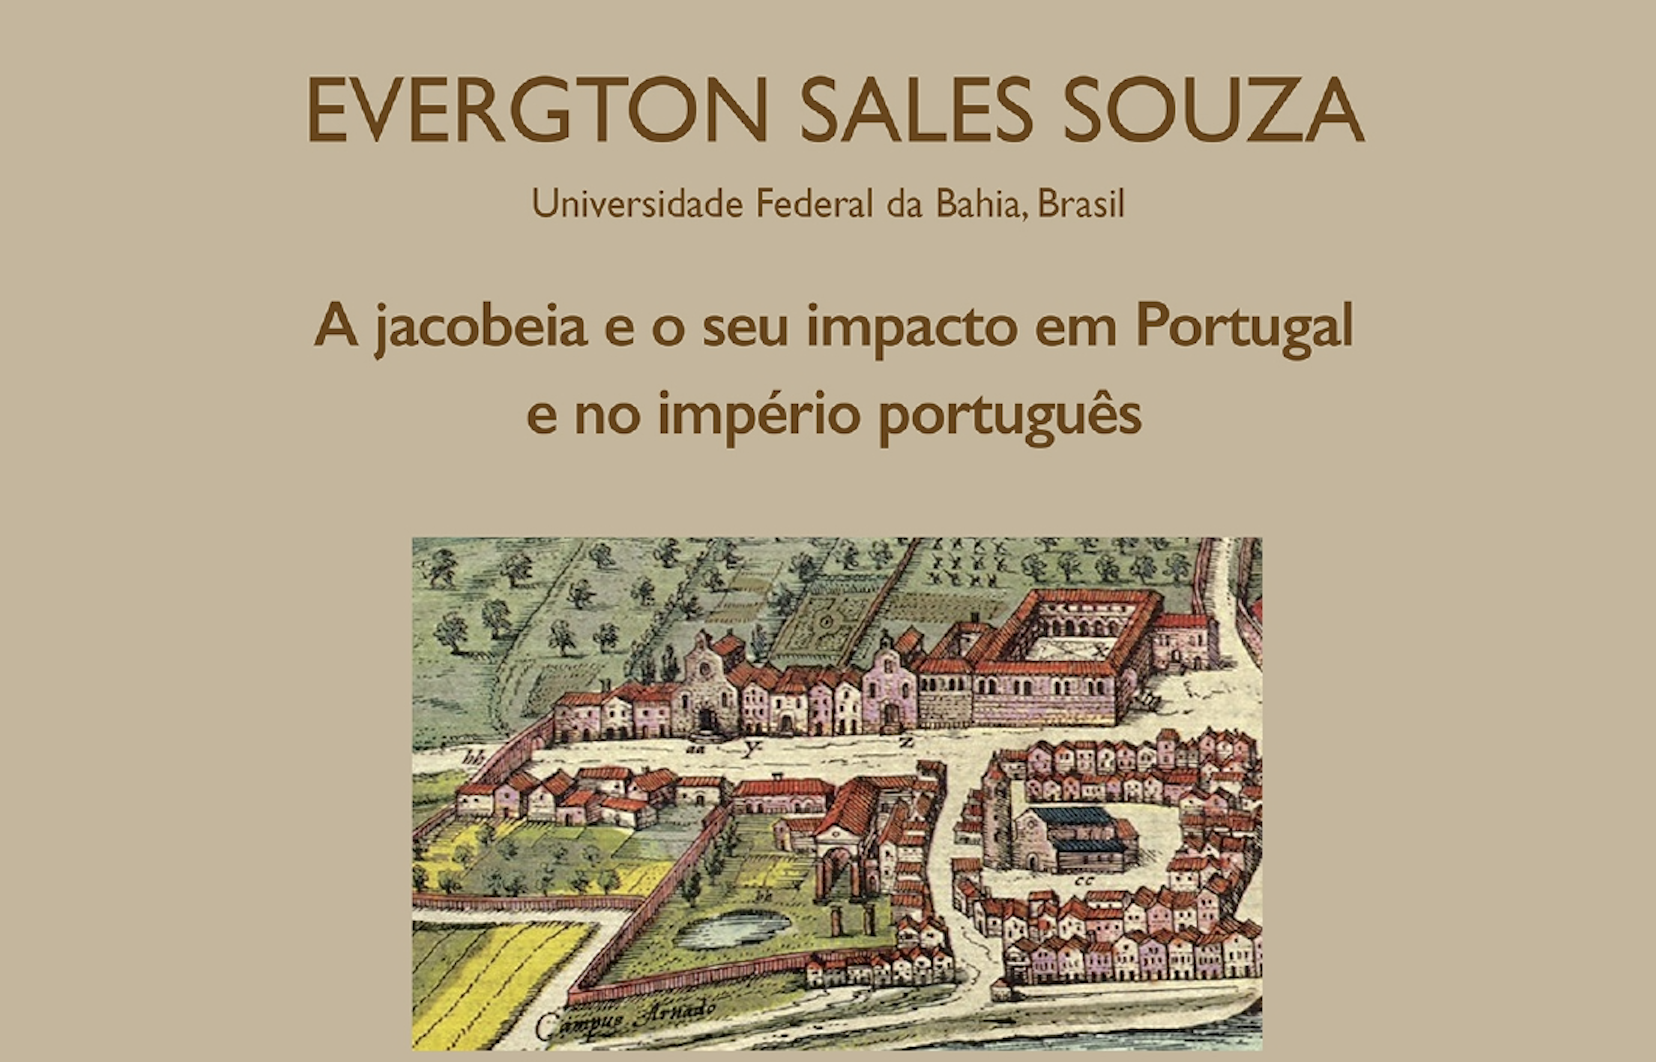 Conference by Evergton Sales Souza: A jacobeia e o seu impacto em Portugal e no império português